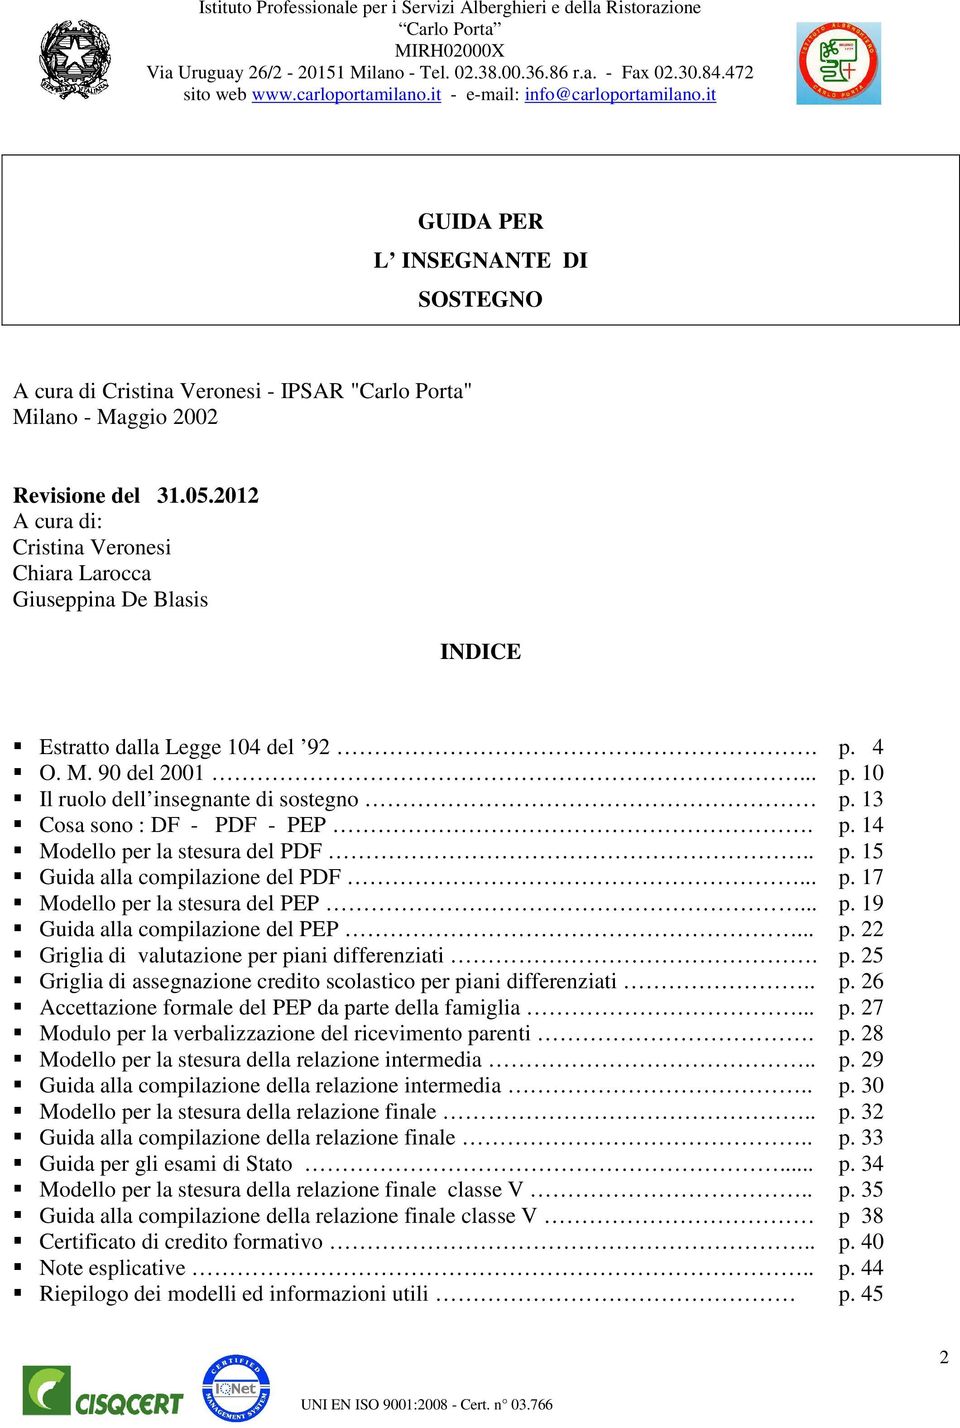 13 Cosa sono : DF - PDF - PEP. p. 14 Modello per la stesura del PDF.. p. 15 Guida alla compilazione del PDF... p. 17 Modello per la stesura del PEP... p. 19 Guida alla compilazione del PEP... p. 22 Griglia di valutazione per piani differenziati.